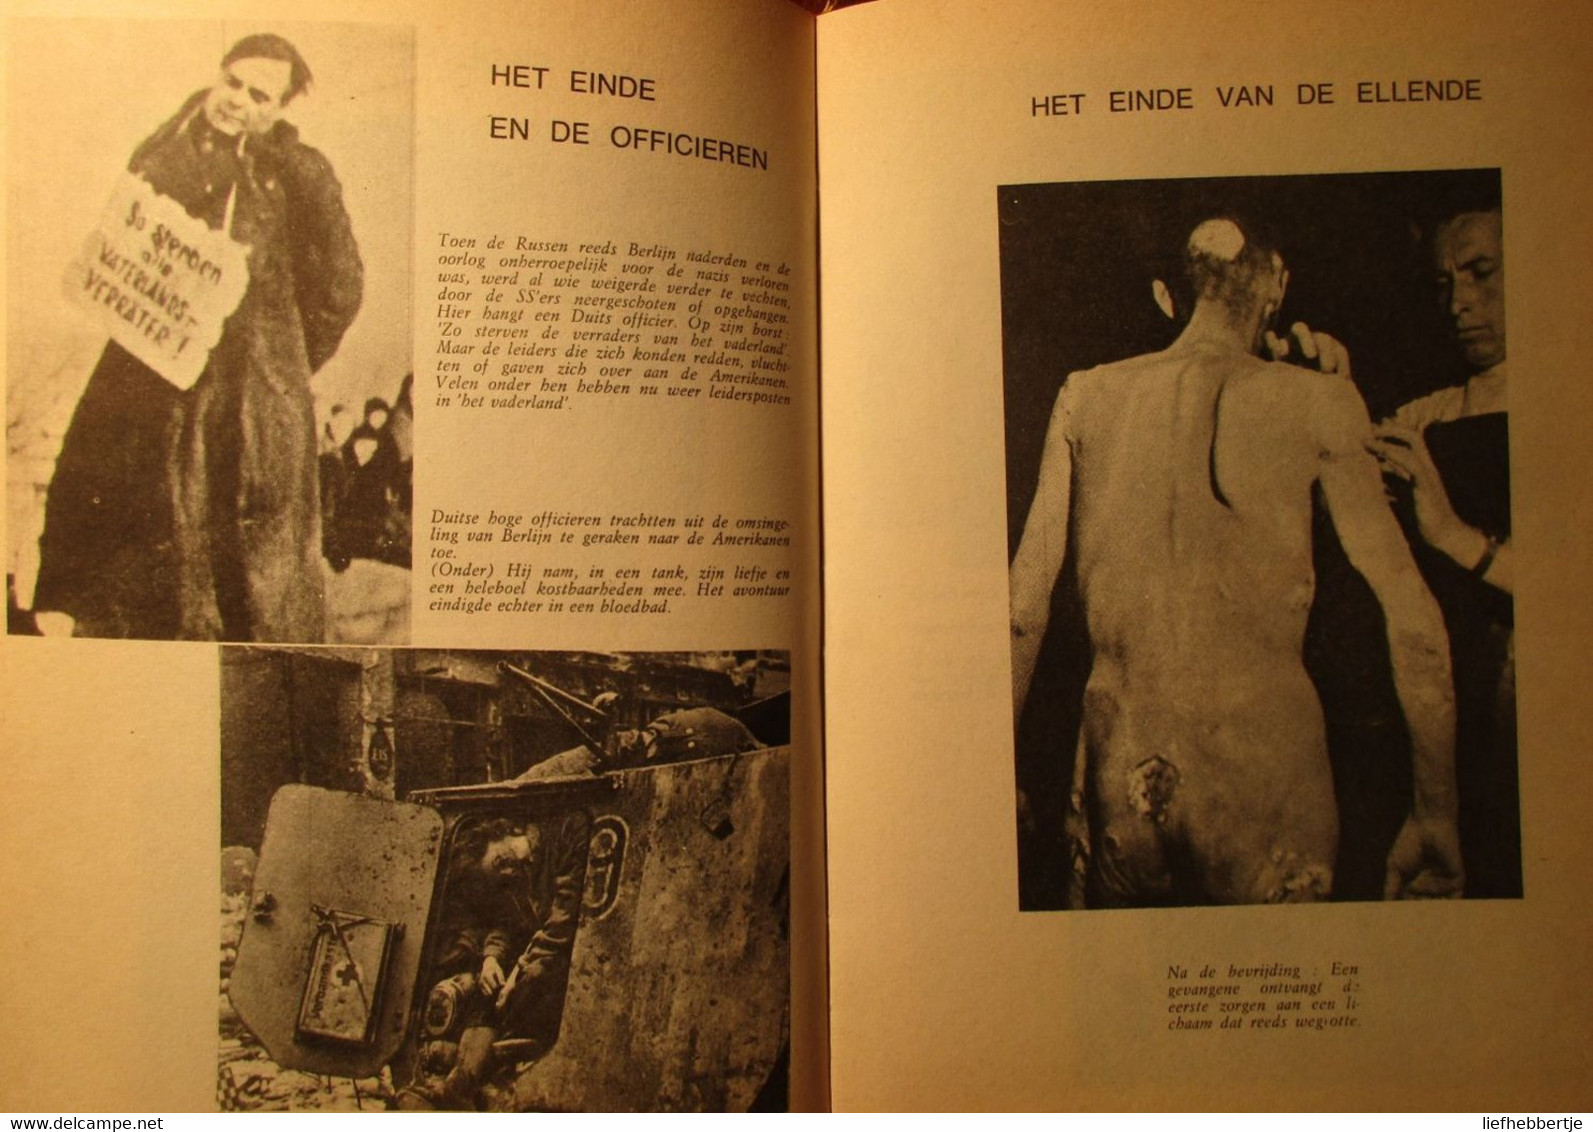 50 Jaar Menselijke Schande - Door F. Van Maele - Uitg. Te Gent Bij De Steenbok - Guerra 1939-45